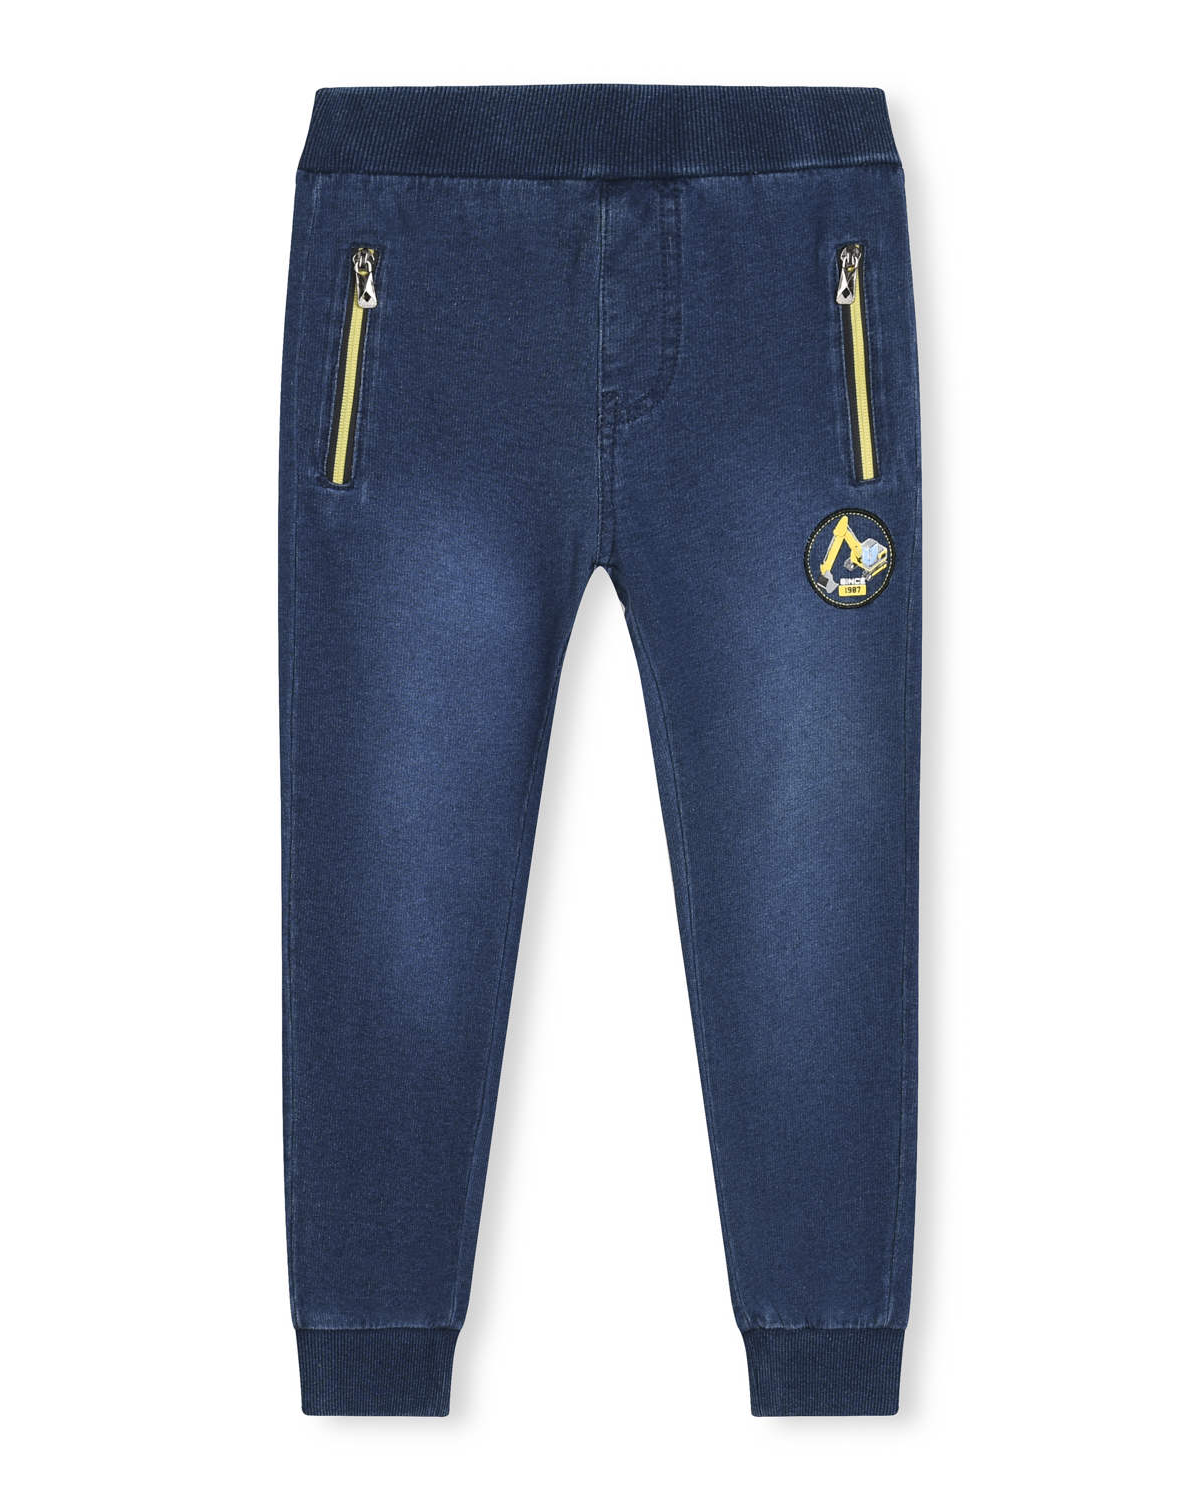 Chlapecké riflové kalhoty / tepláky - KUGO TM8259K, modrá / tyrkysové zipy Barva: Modrá, Velikost: 110